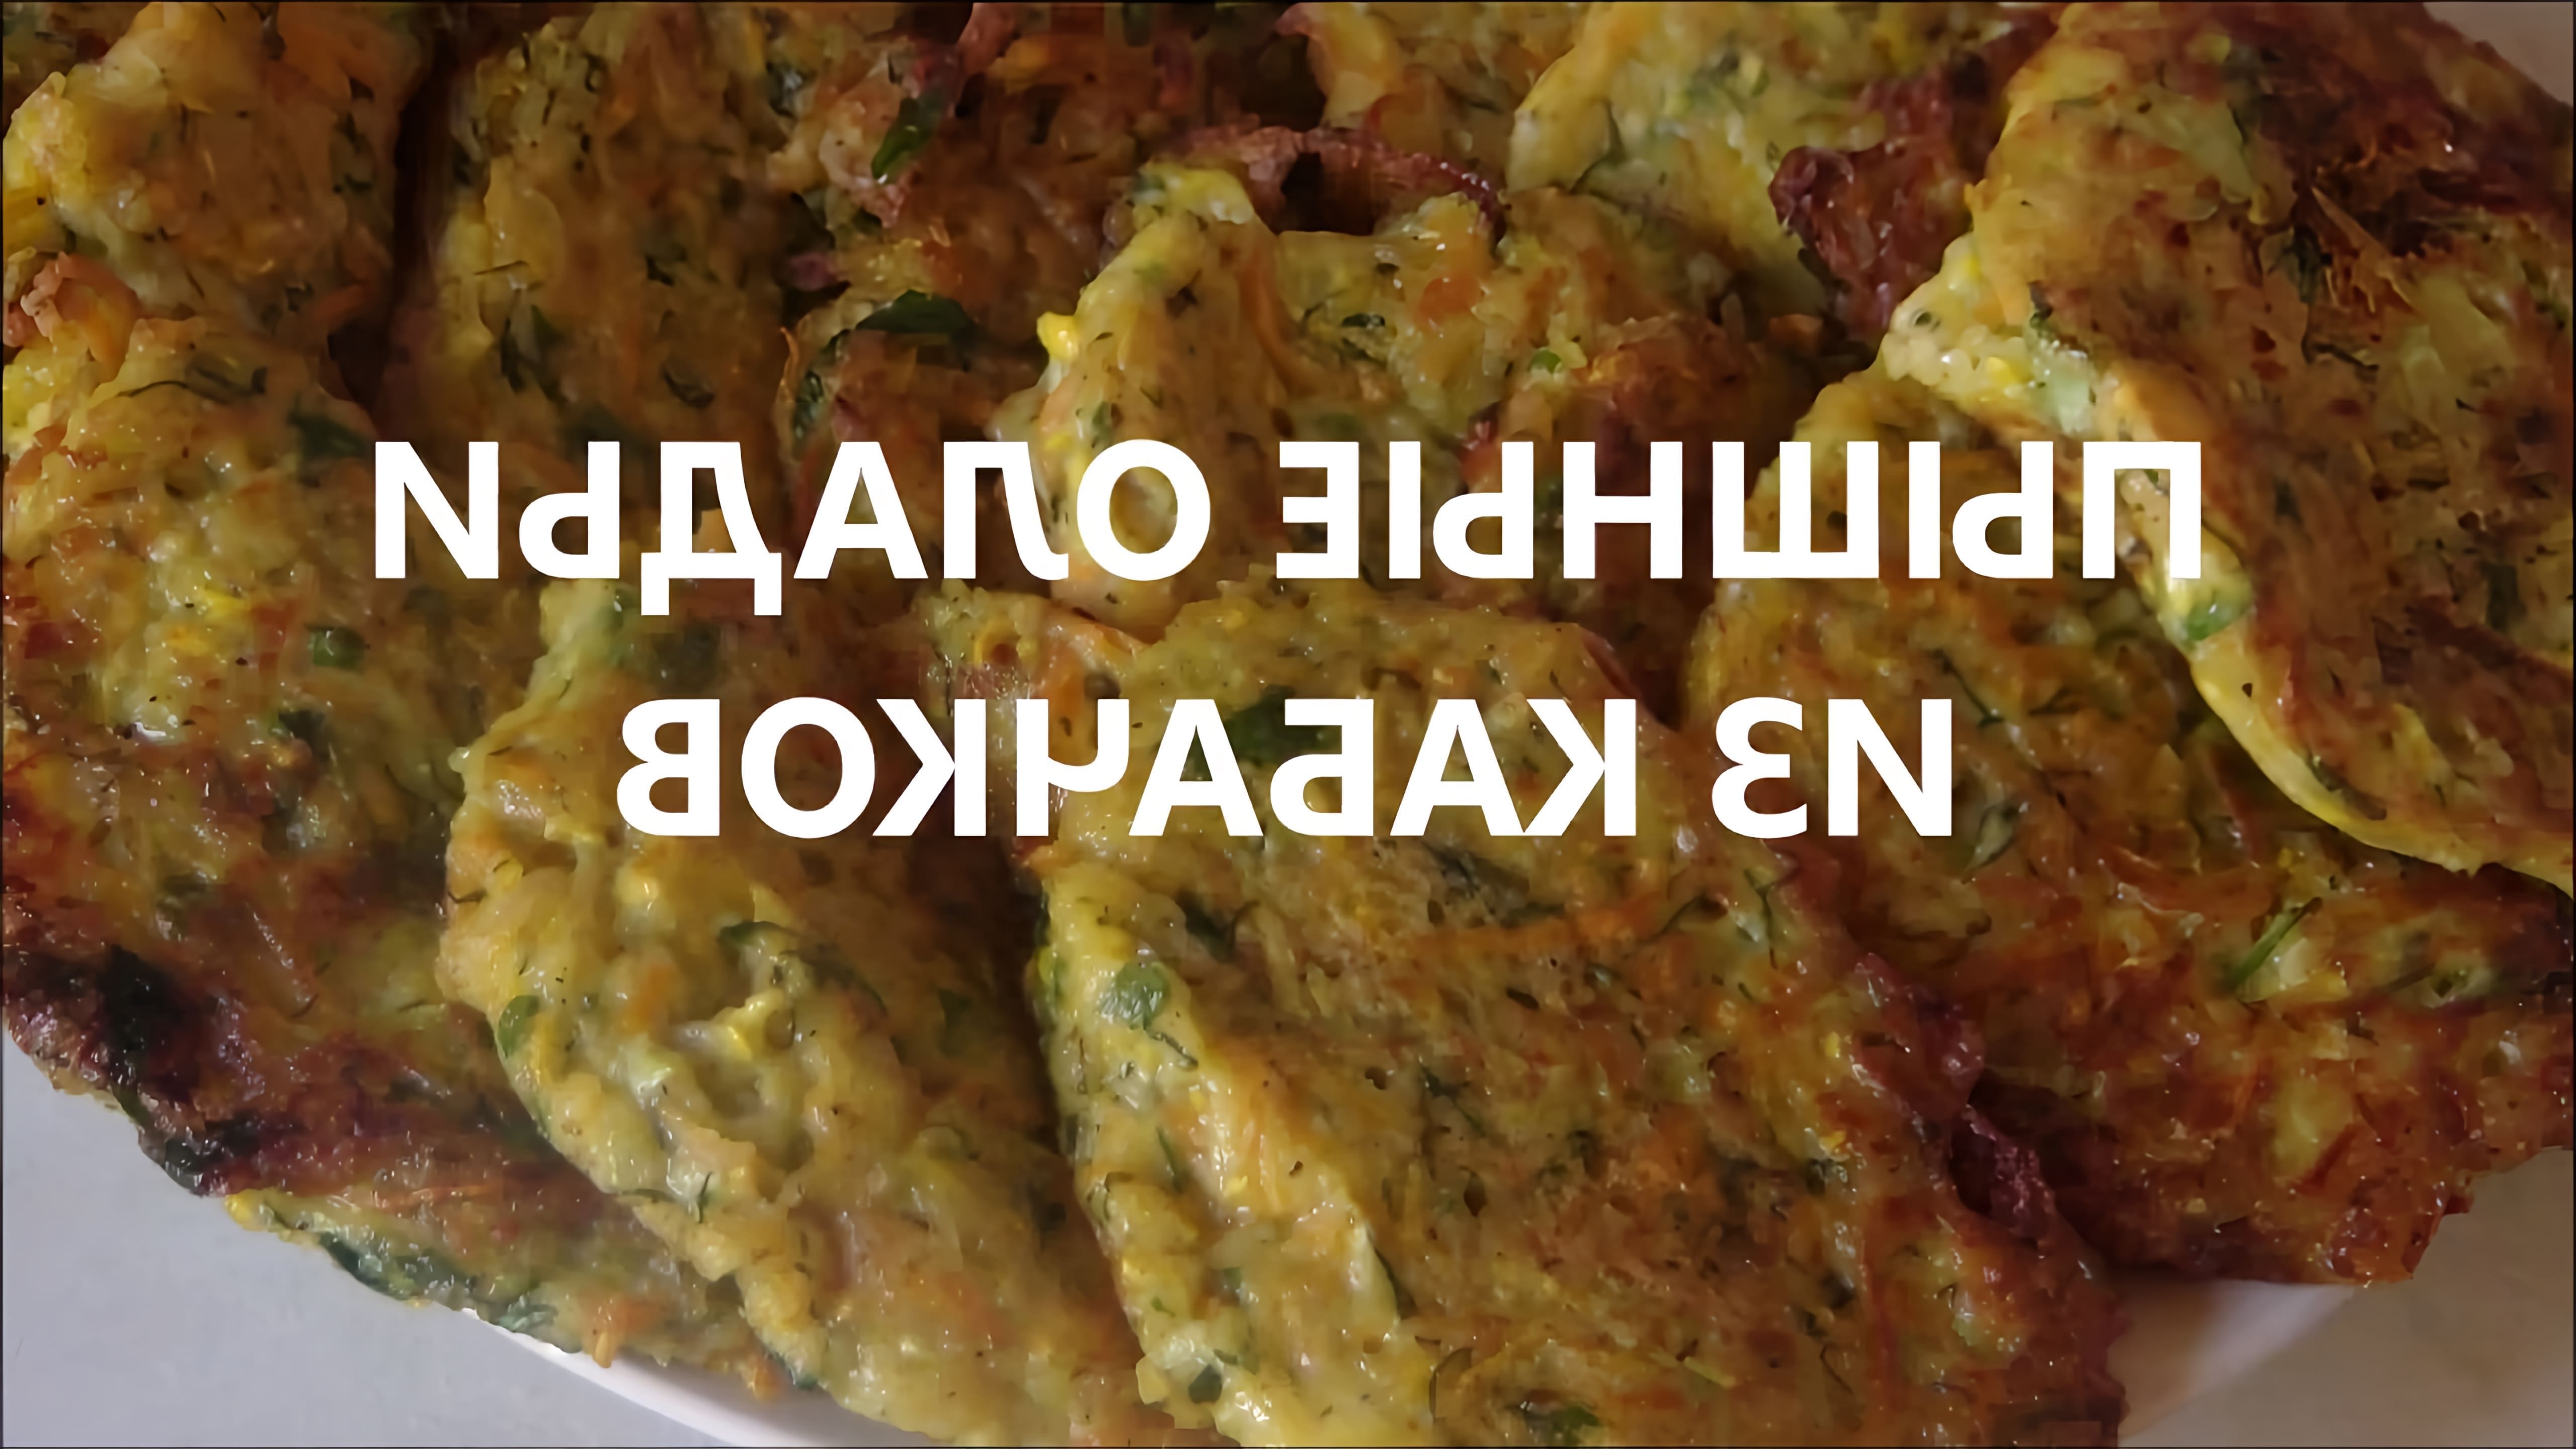 В этом видео демонстрируется рецепт приготовления пышных оладий из кабачков